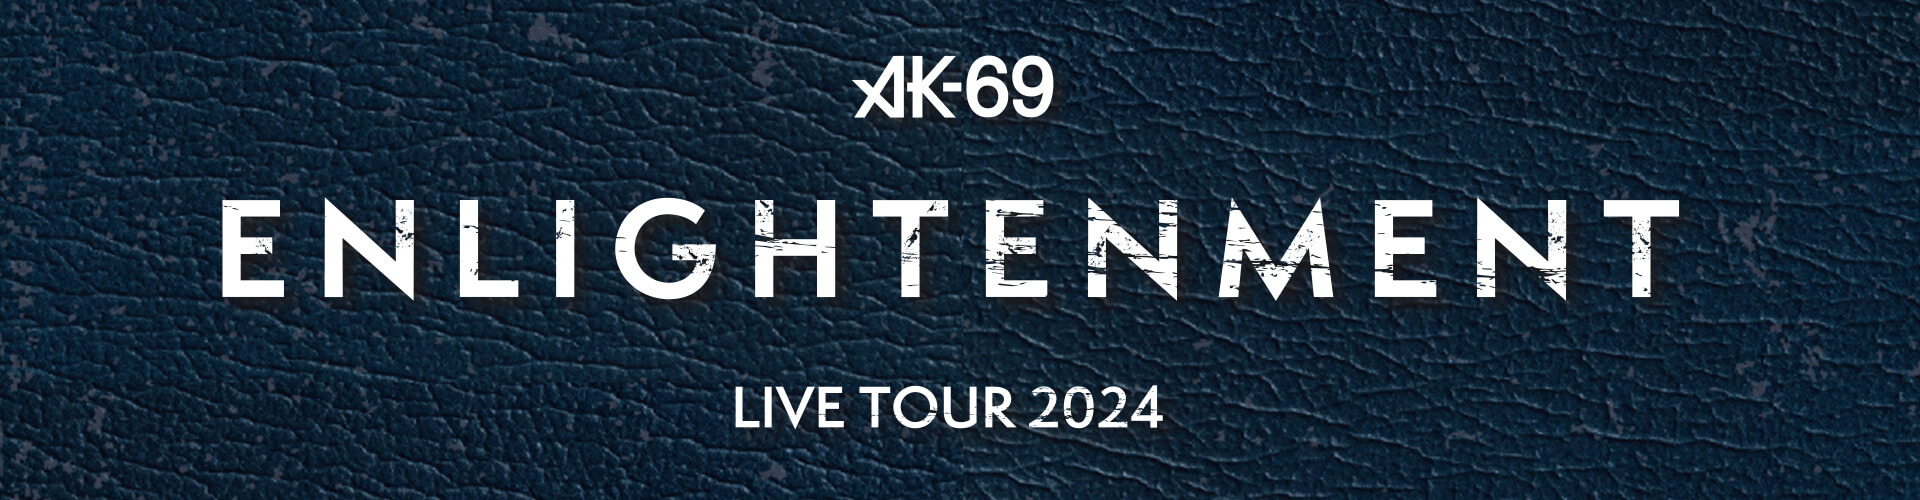 [ AK-69 LIVE TOUR 2024 -Enlightenment- ] 甲府CONVICTION